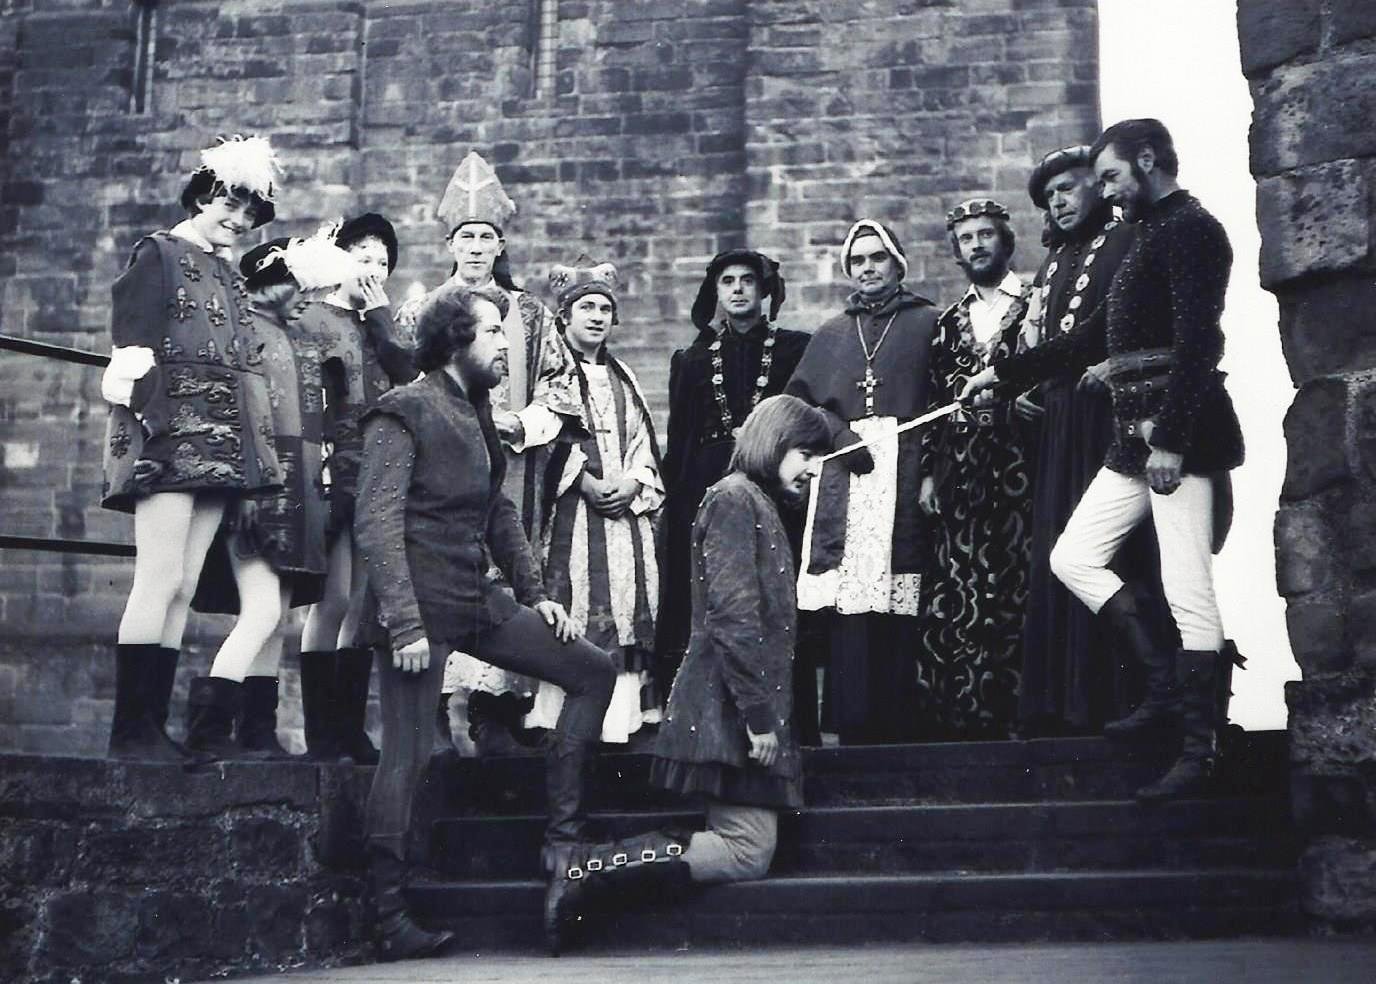 Performers, Carlisle 1977